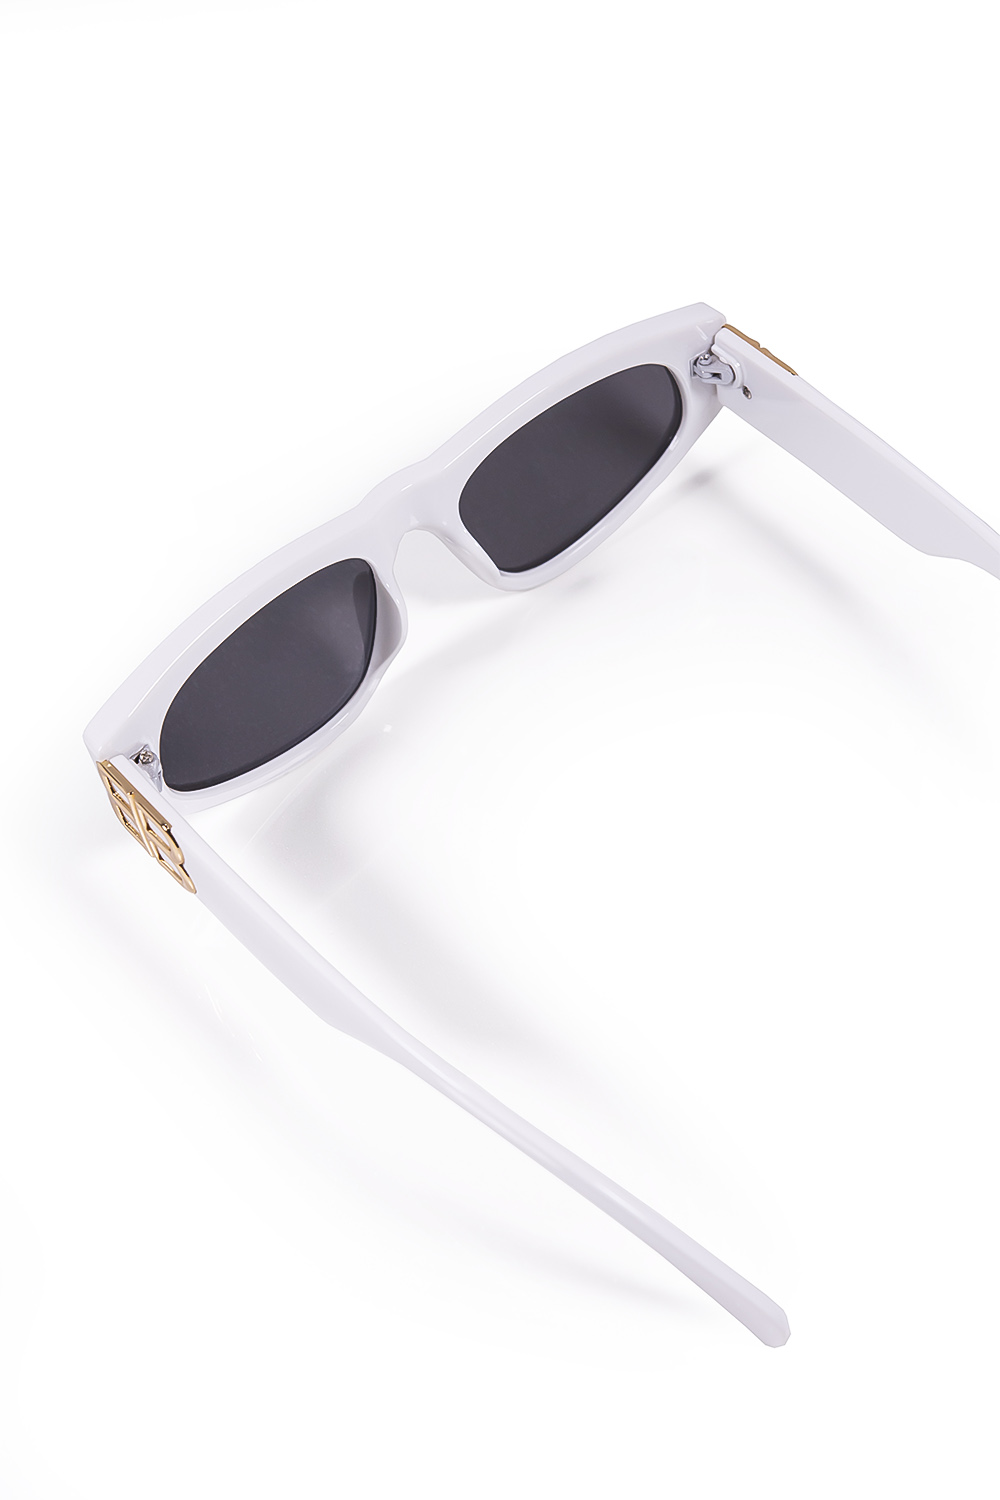 Άσπρα γυαλιά ηλίου οβάλ με χρυσή λεπτομέρεια